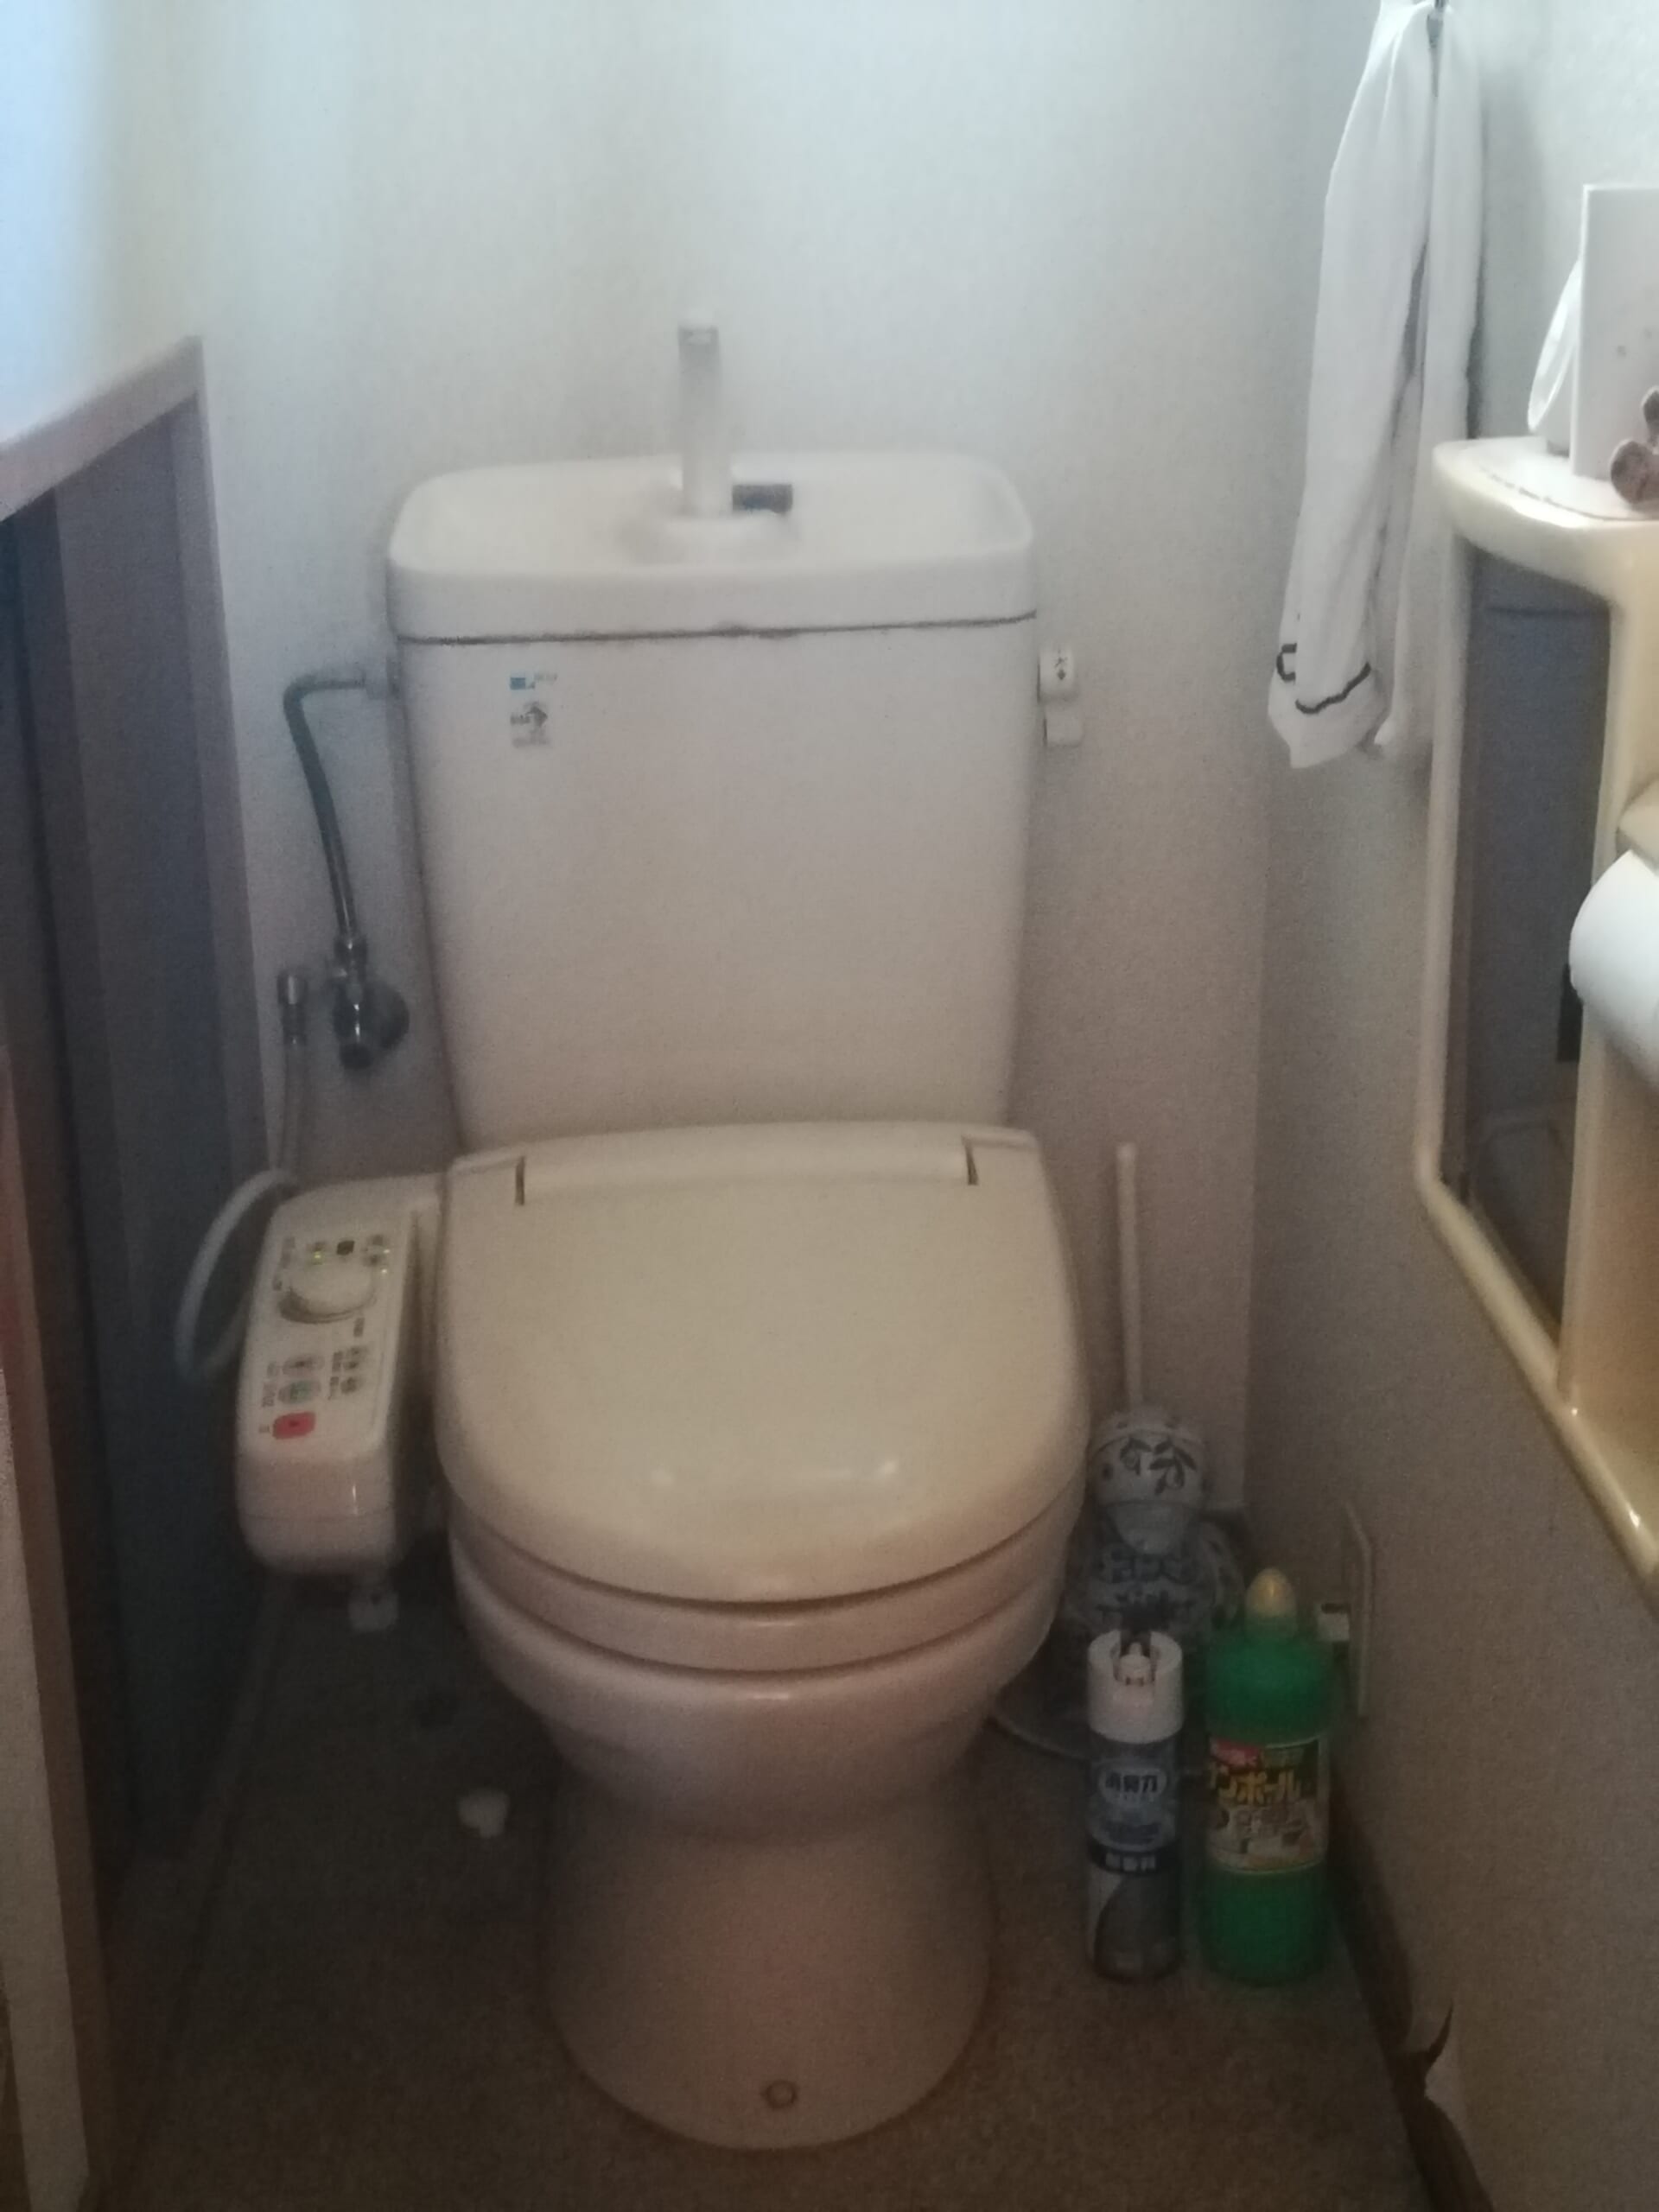 トイレ 水位 低い アパート